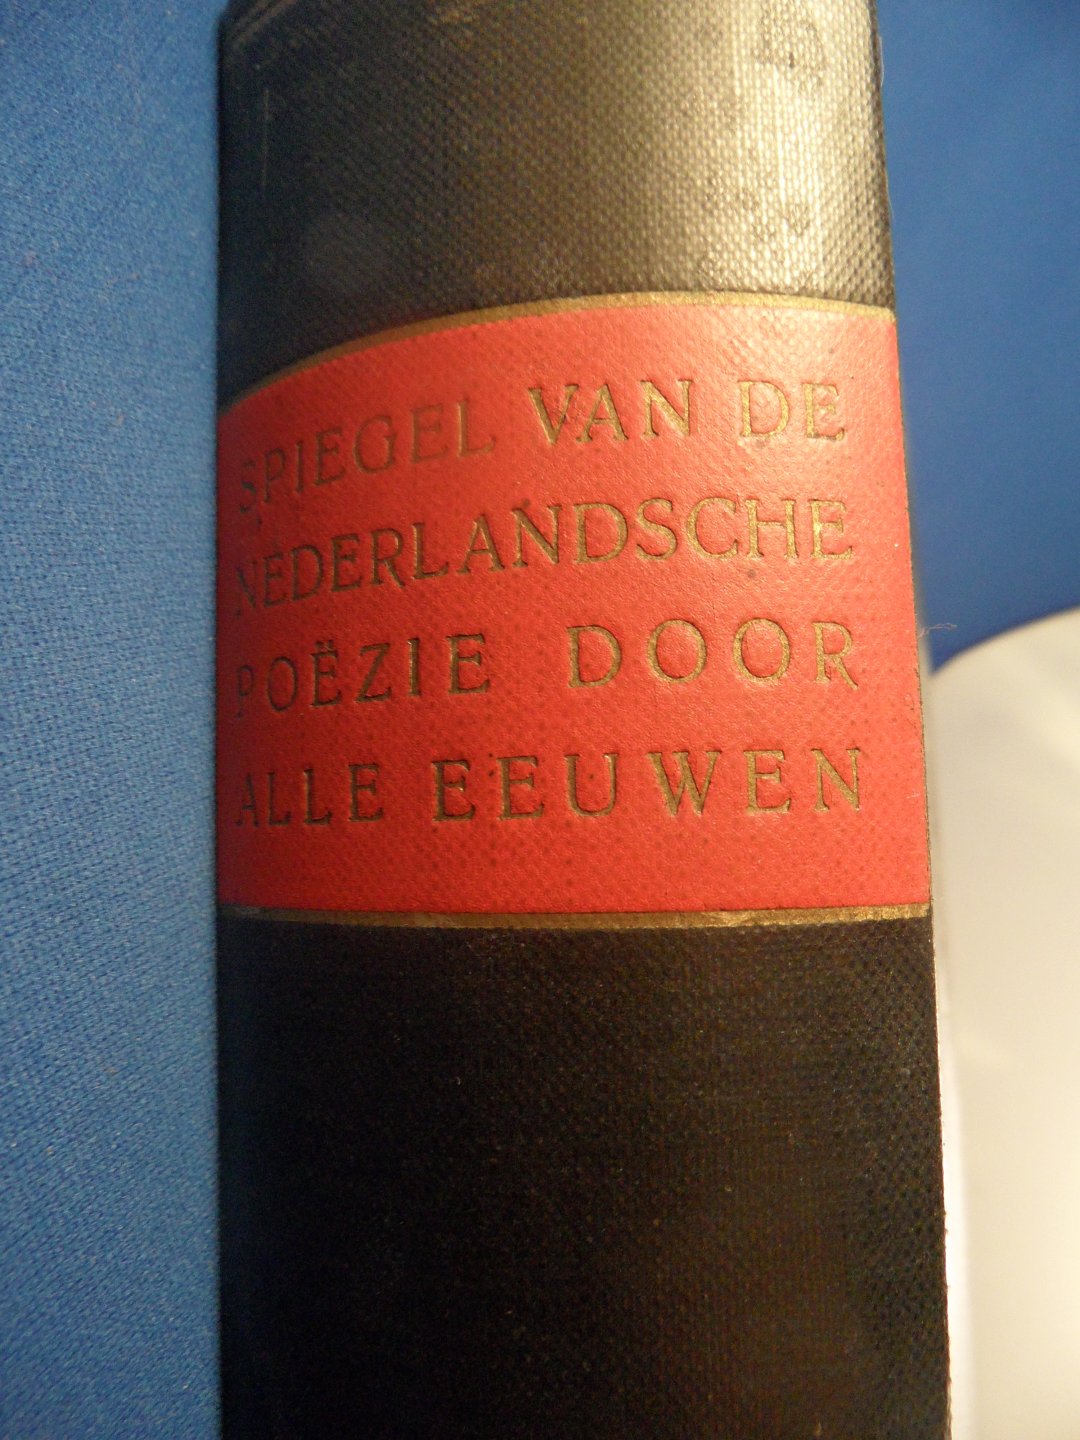 Vriesland, Victor E. - Spiegel van de Nederlandse poezie deel 1: 1100- 1900, deel 2: 1900-1940, deel 3: 1940 - 1955 3 banden samen